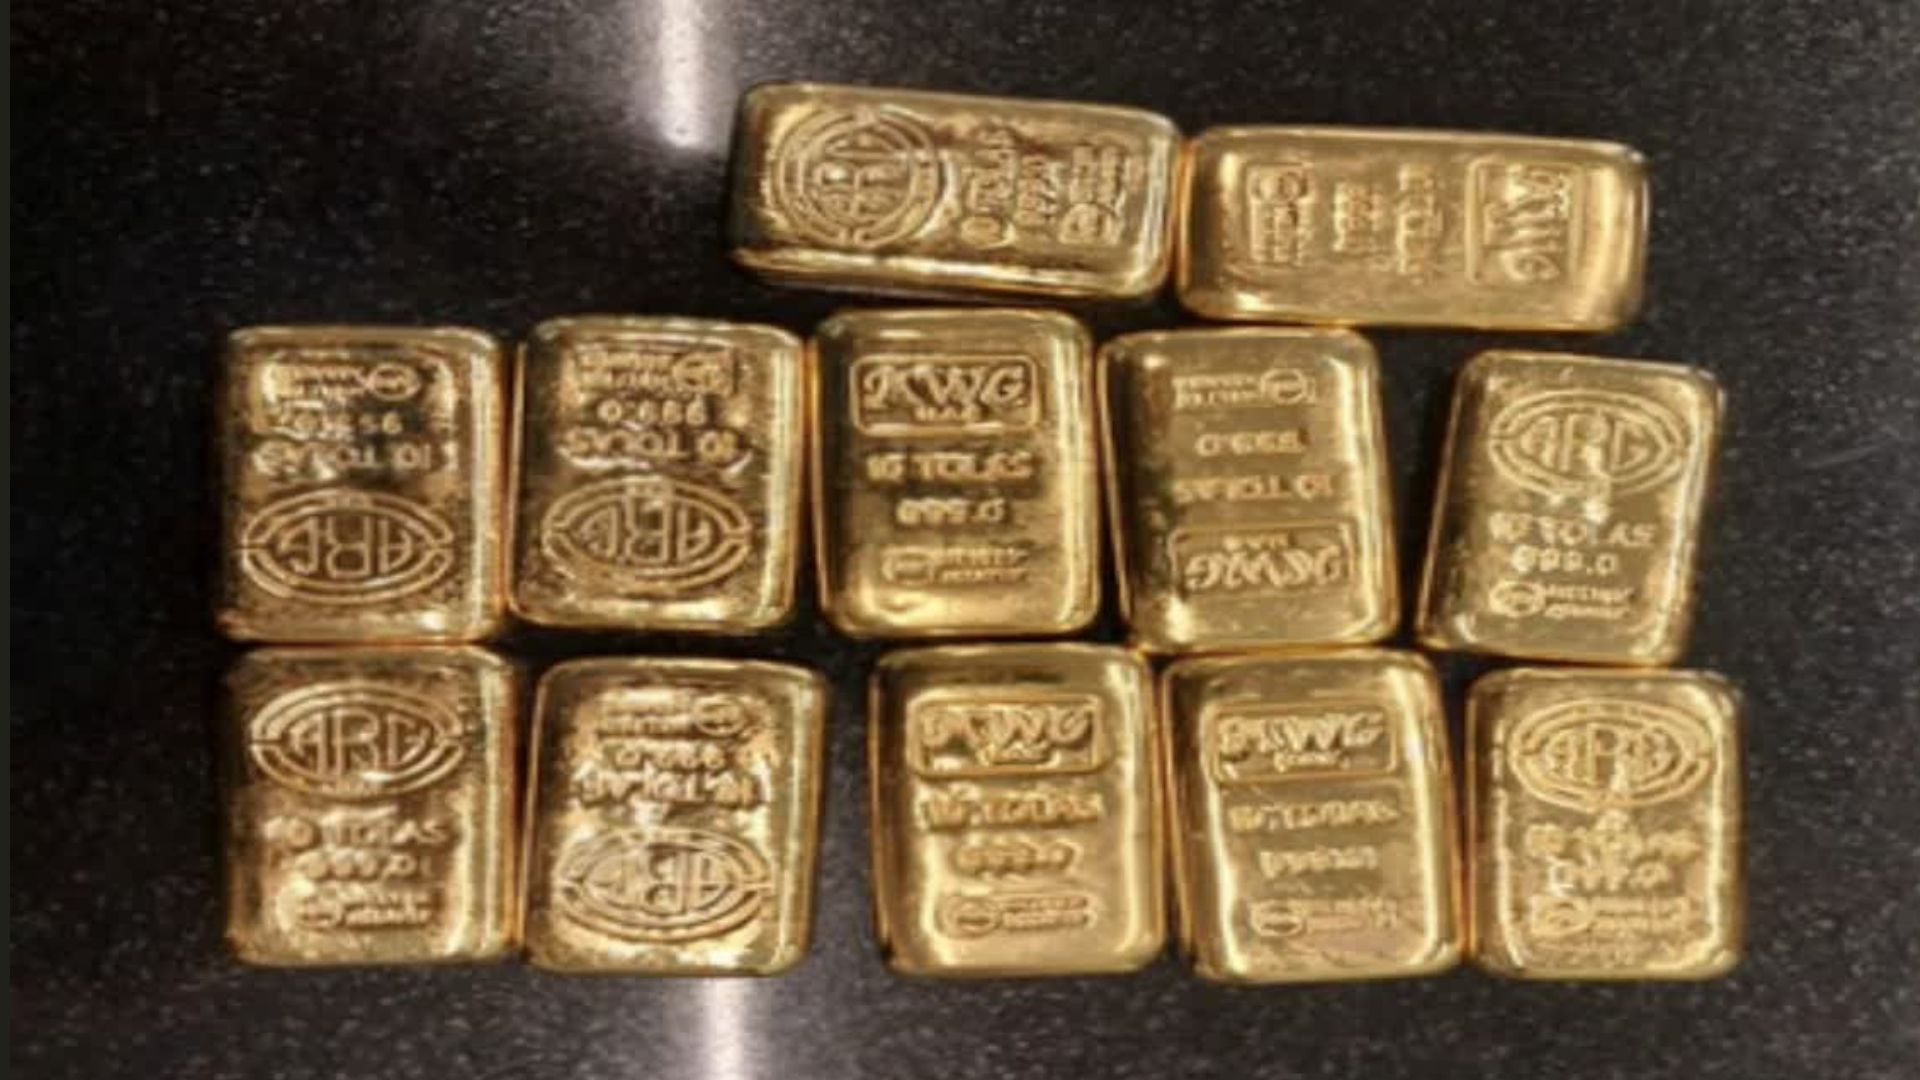 Huge amount of gold seized